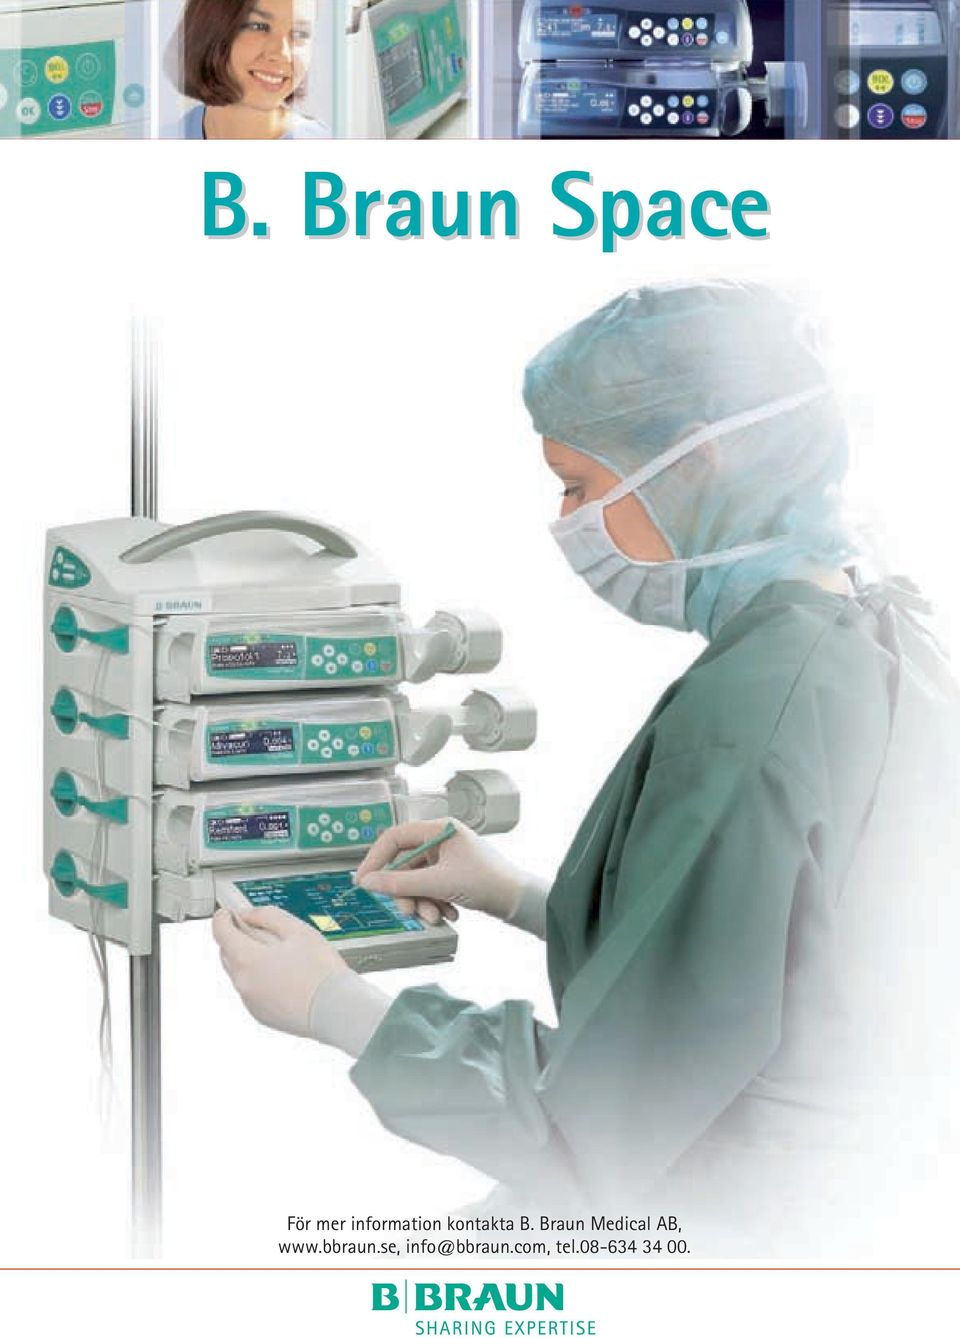 Braun Medical AB, www.bbraun.